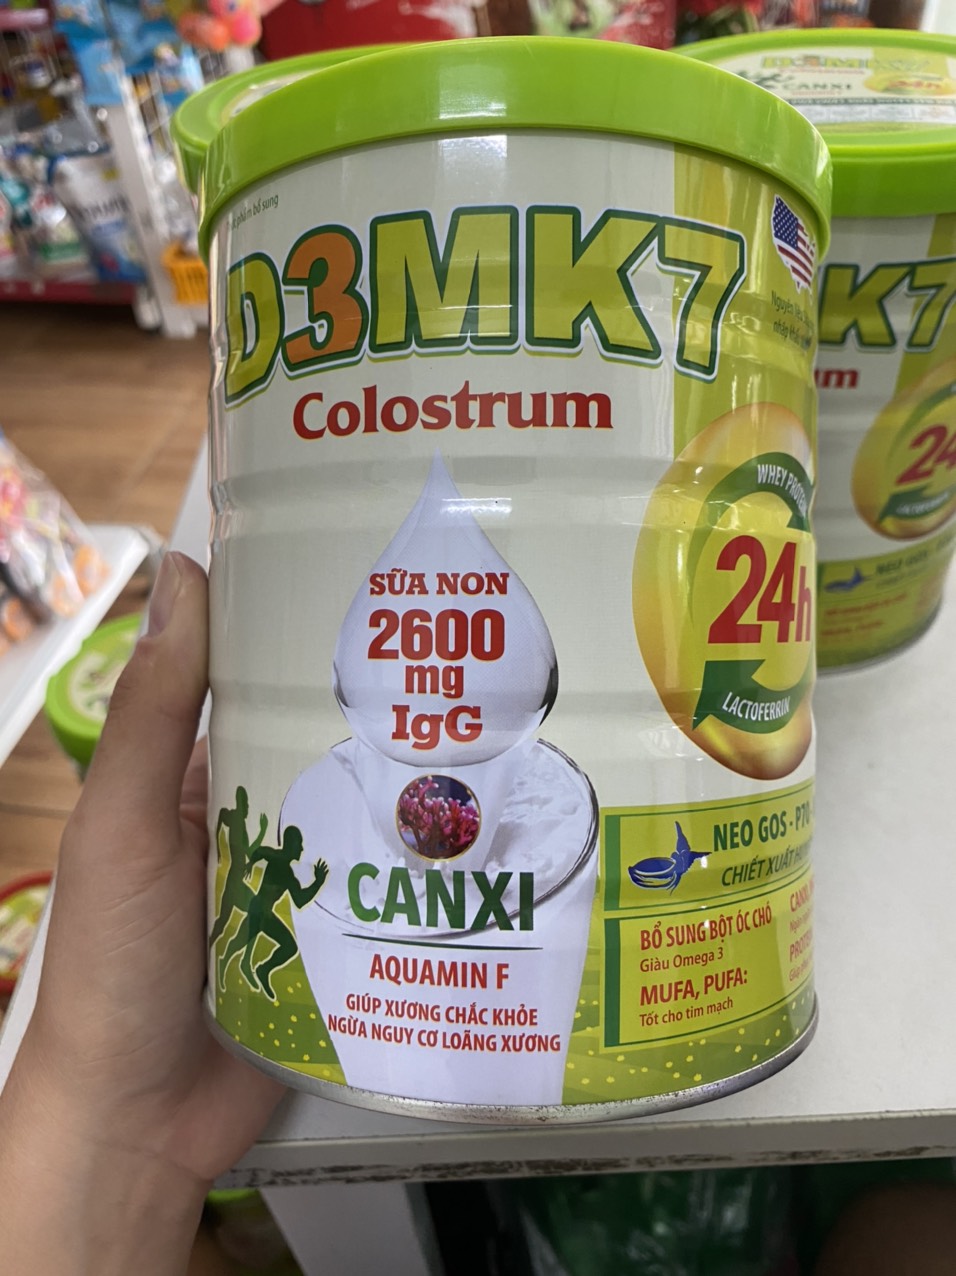 Sữa D3 MK7 - chiết xuất huyết yến thế hệ mới sữa dành cho người trên 18